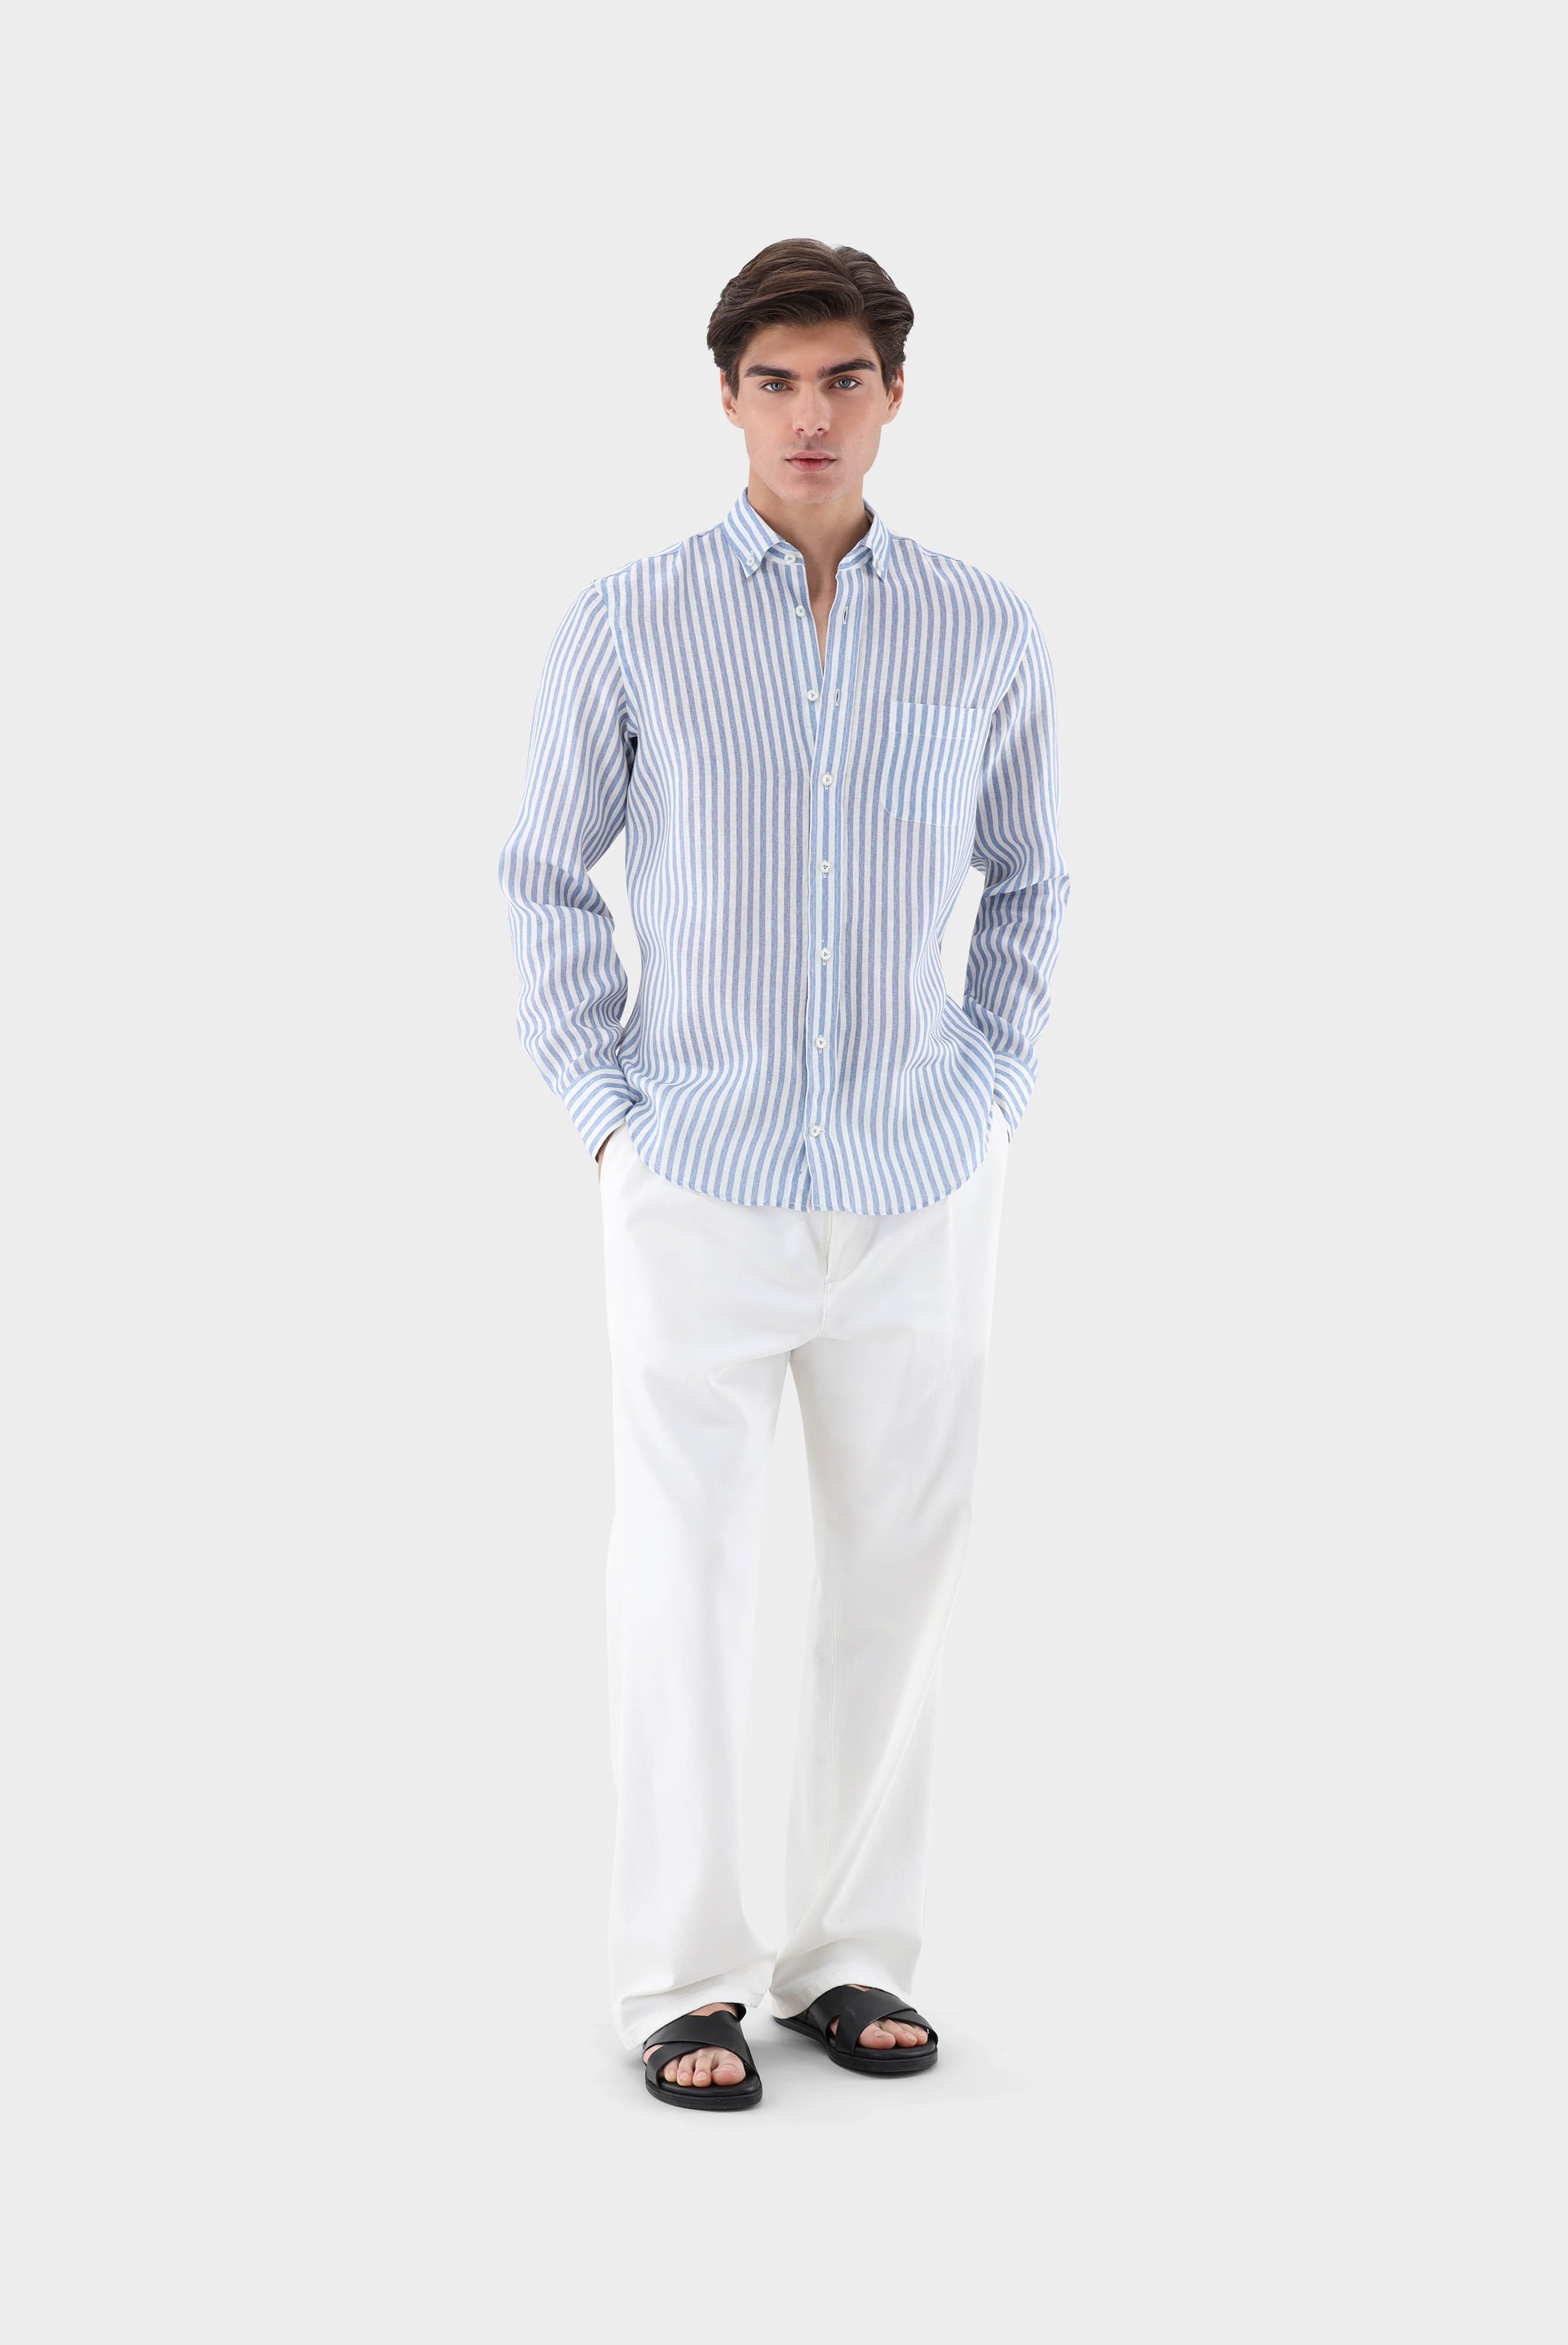 Casual Hemden+Leinenhemd mit Streifen-Druck Tailor Fit+20.2013.9V.170352.740.40